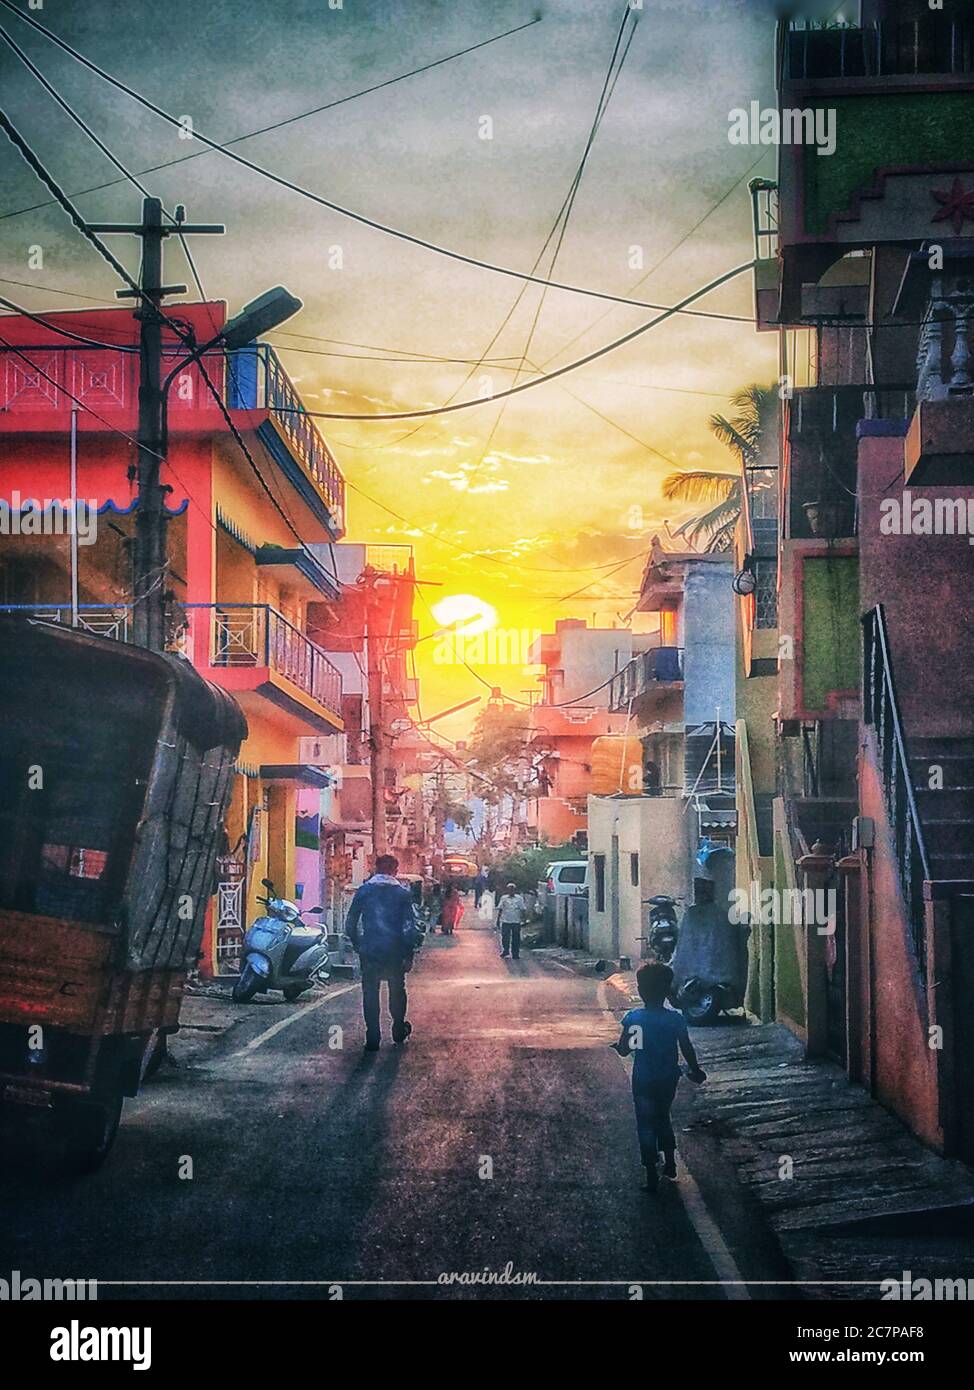 Una bella immagine di strade di una città in bangalore e bellissimo tramonto Foto Stock